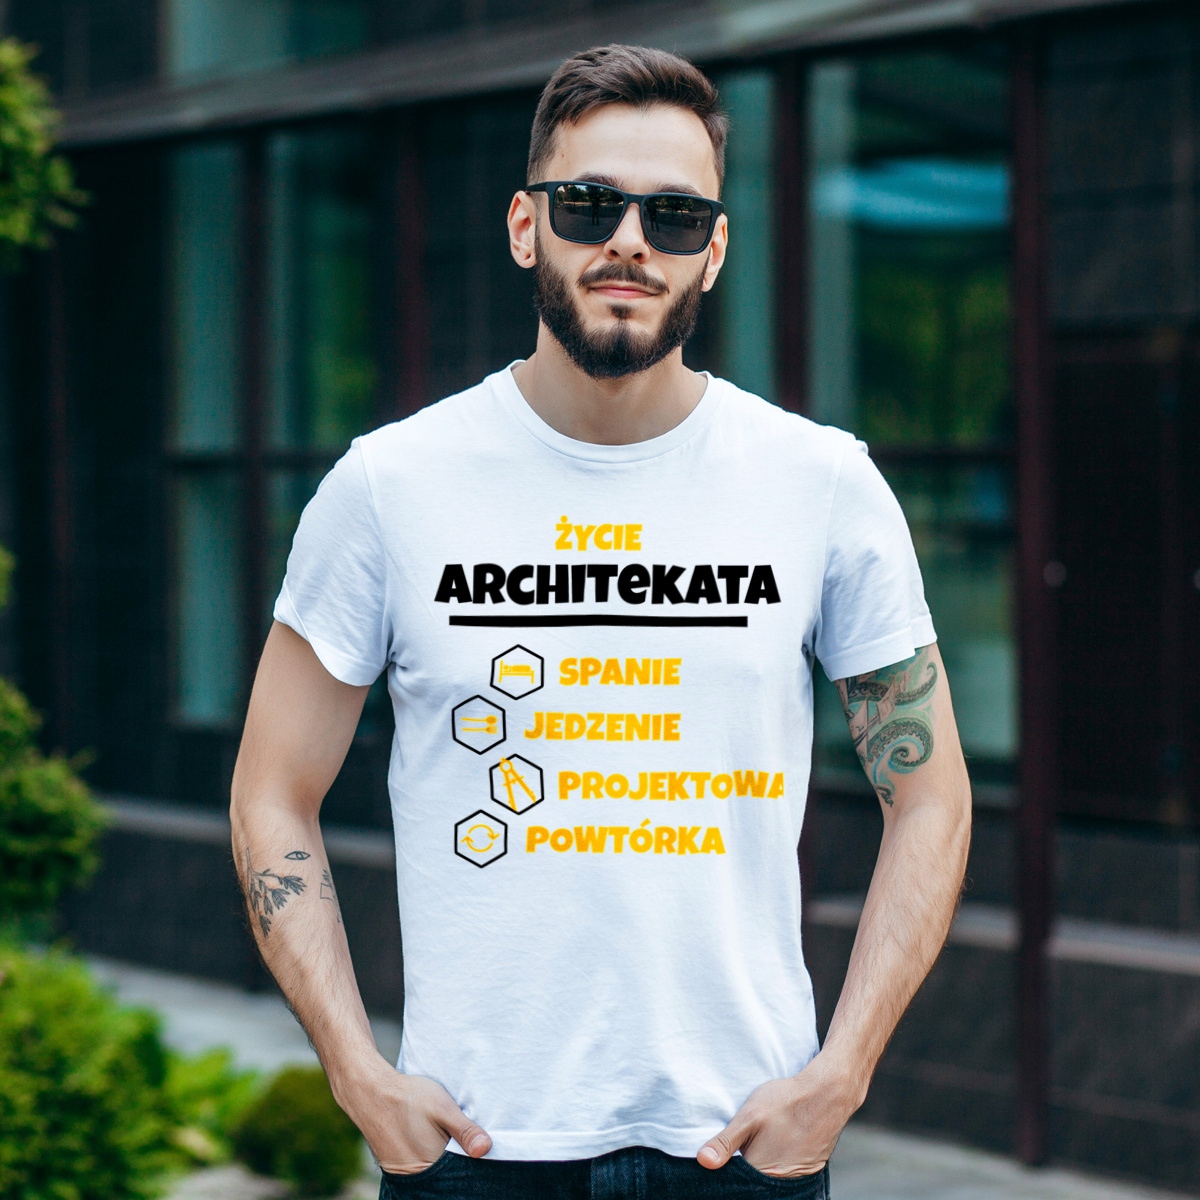 Architekt - Spanie Jedzenie - Męska Koszulka Biała